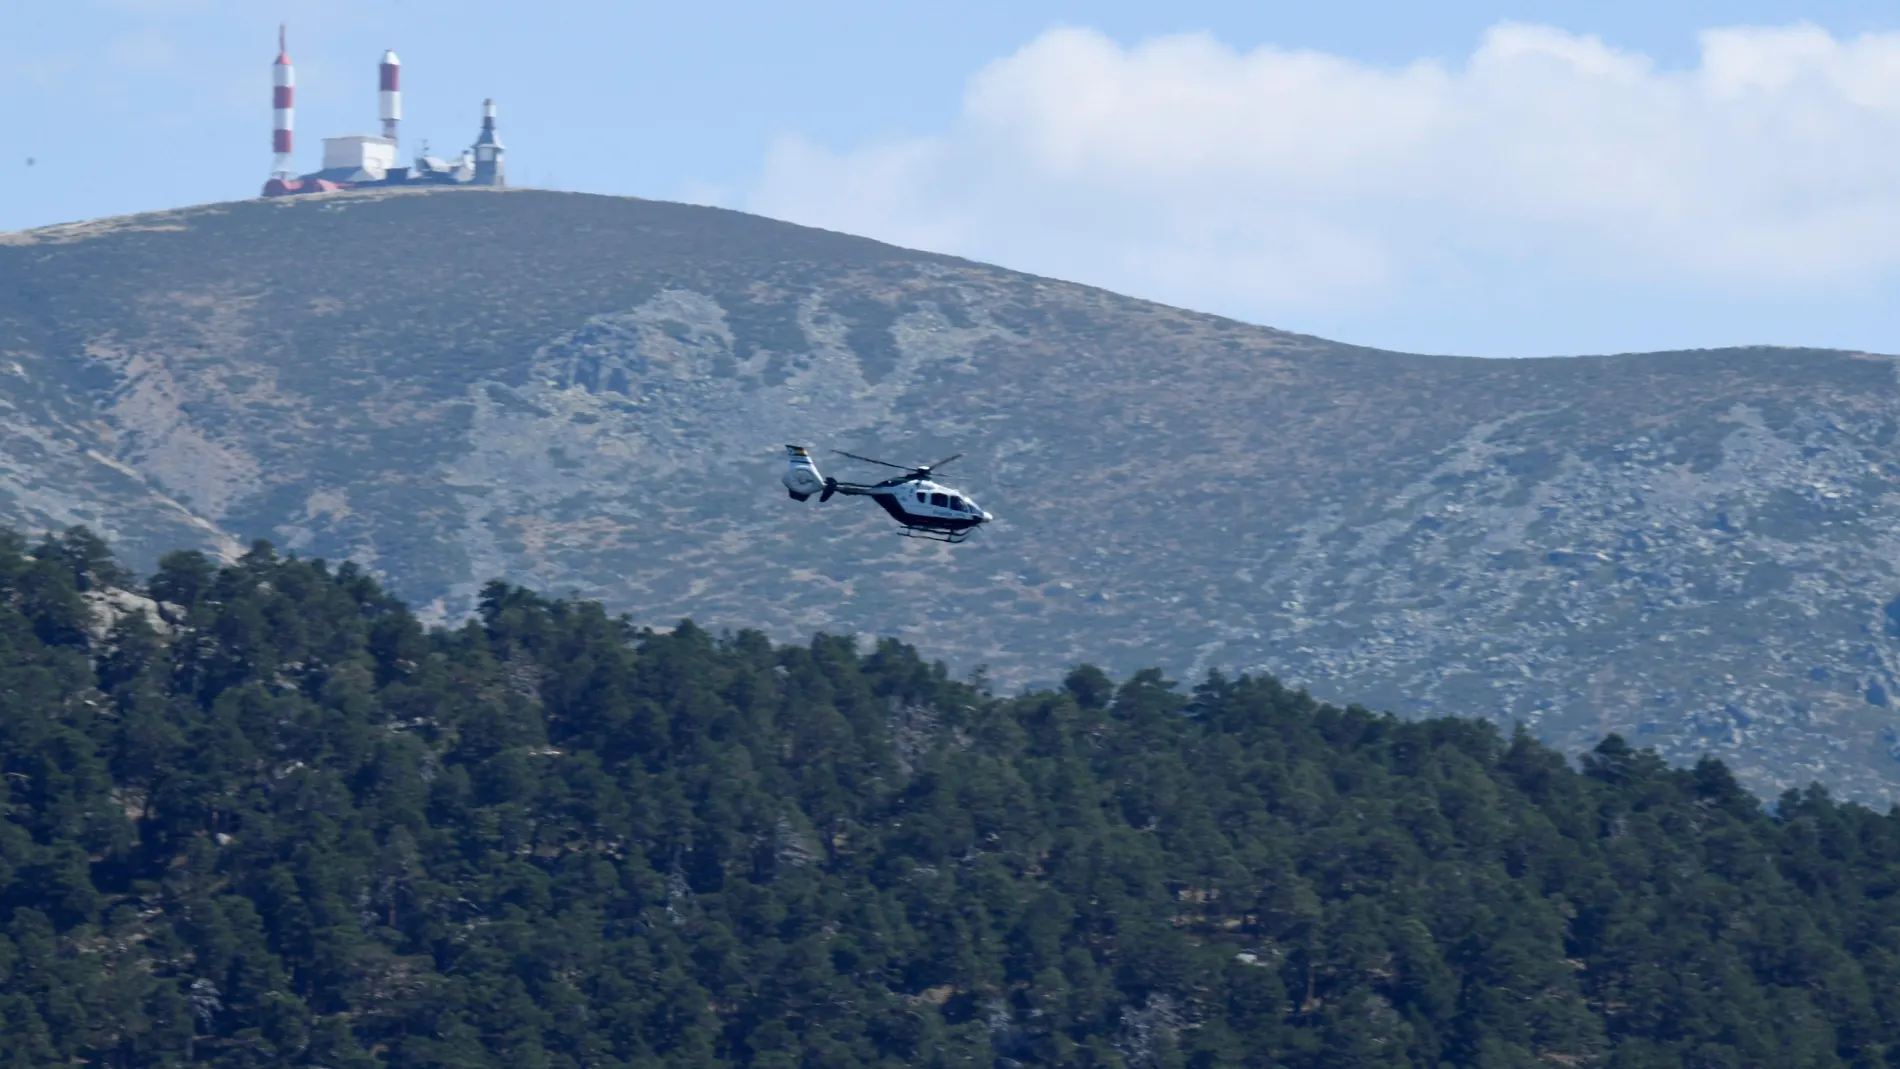 Un helicóptero sobrevuela la zona de los Siete Picos en la localidad de Cercedilla